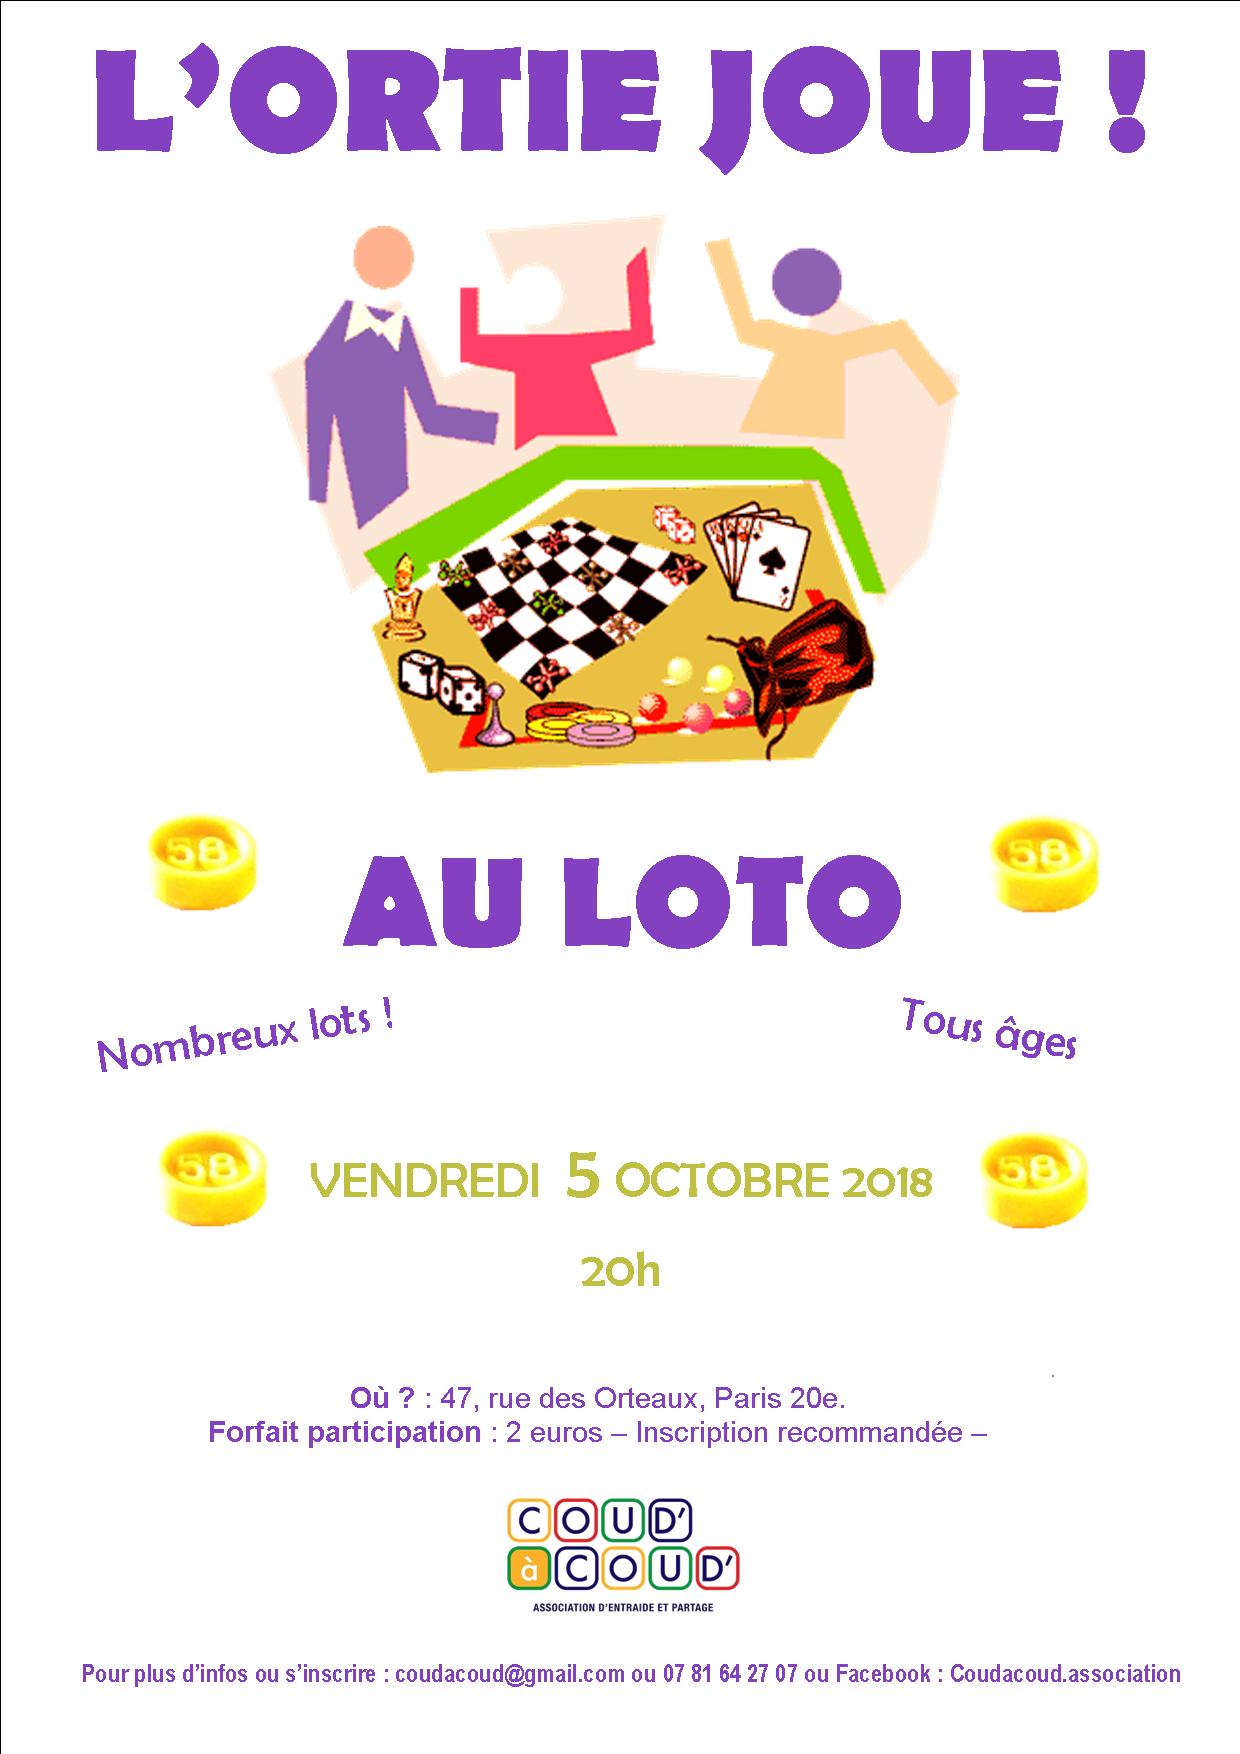 L'Ortie joue au LOTO @ L'Ortie Roule | Paris | Île-de-France | France